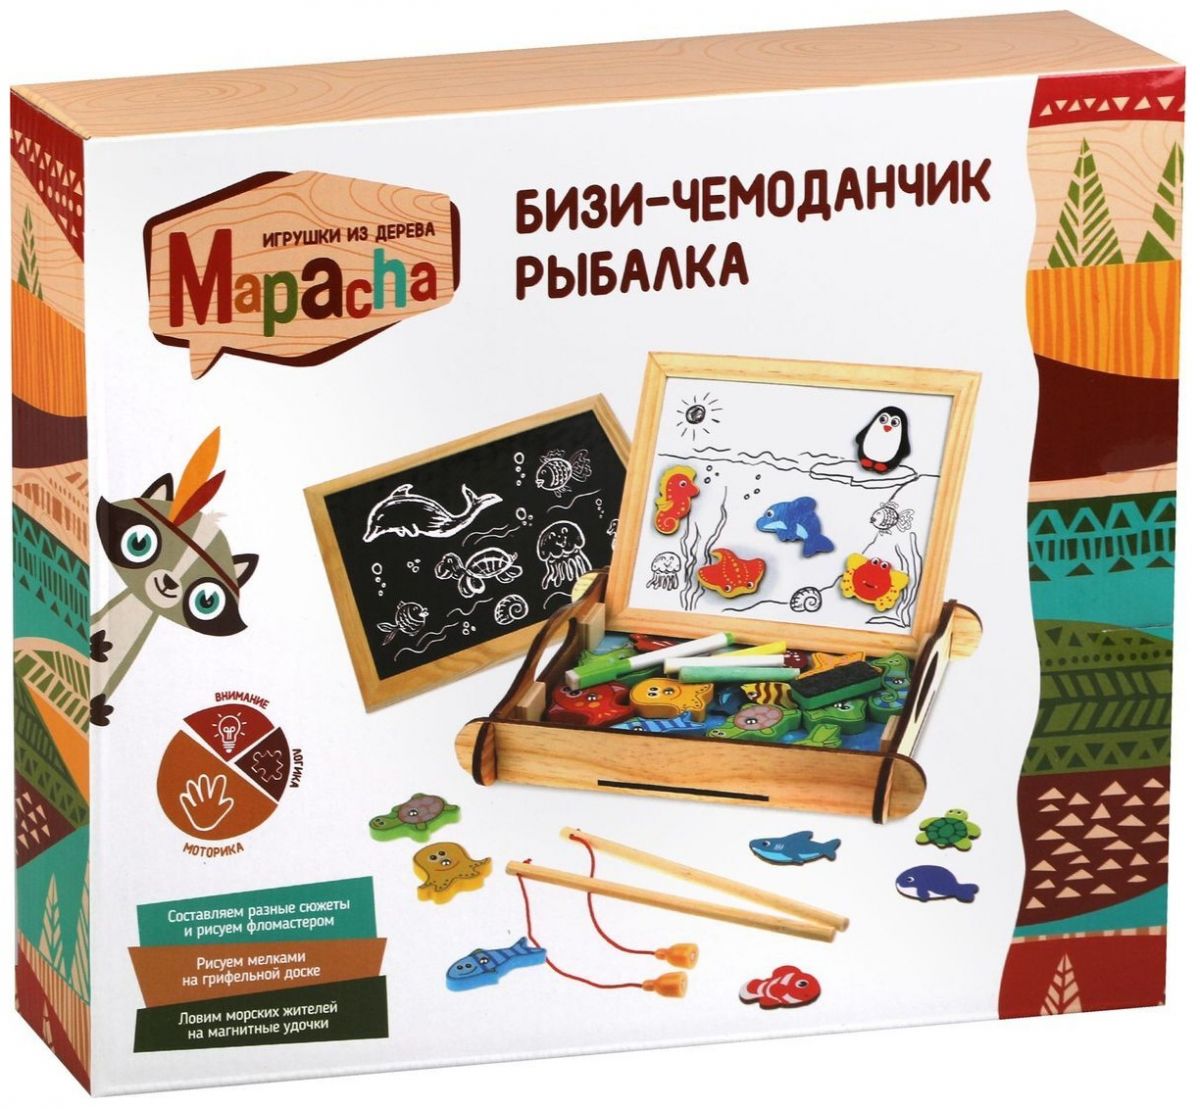 Мапача бизи-чемоданчик Рыбалка 76842 — купить в городе Хабаровск, цена,фото — БЭБИБУМ